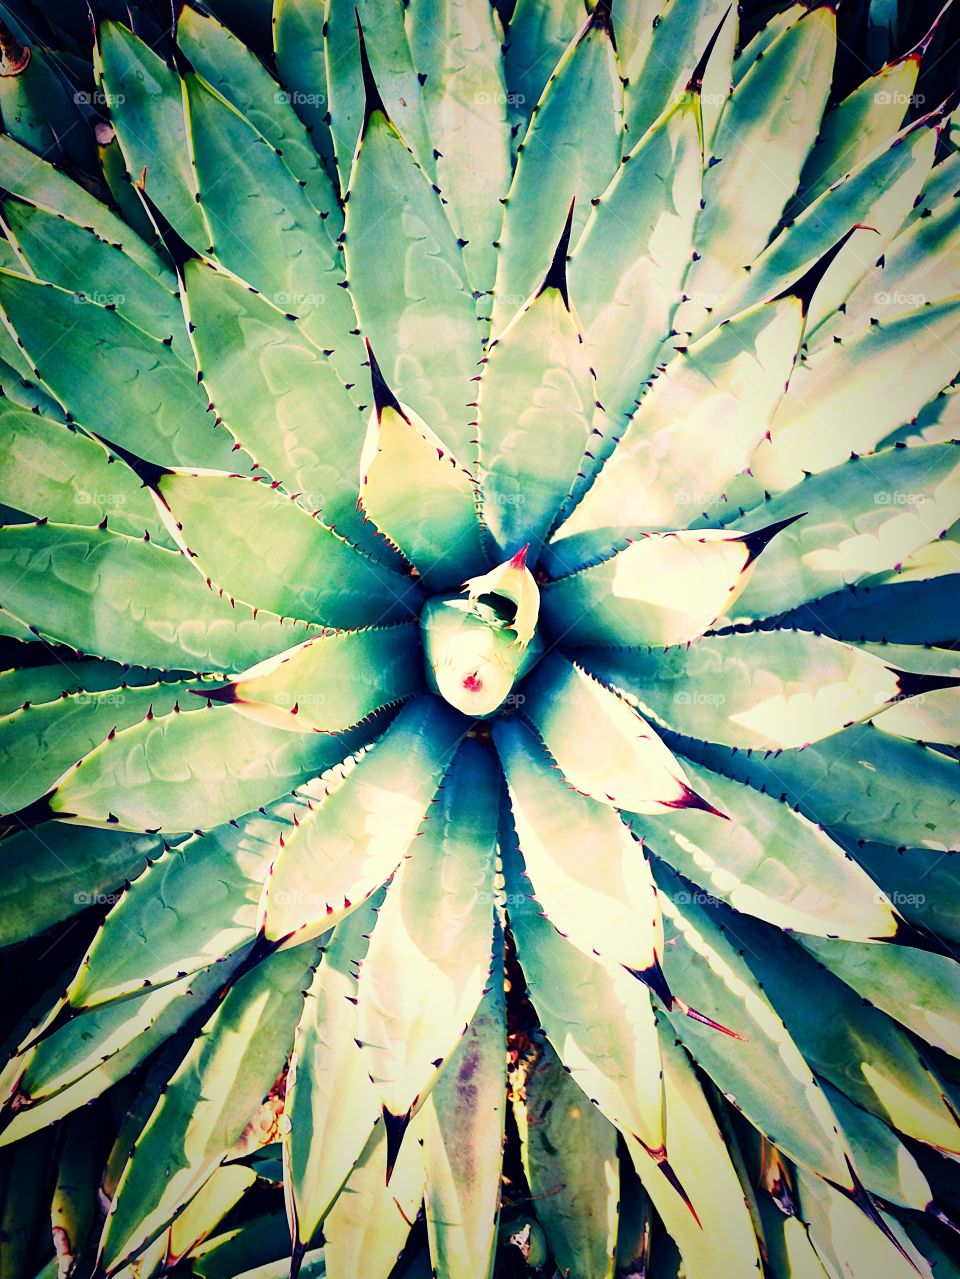 Cactus Petals